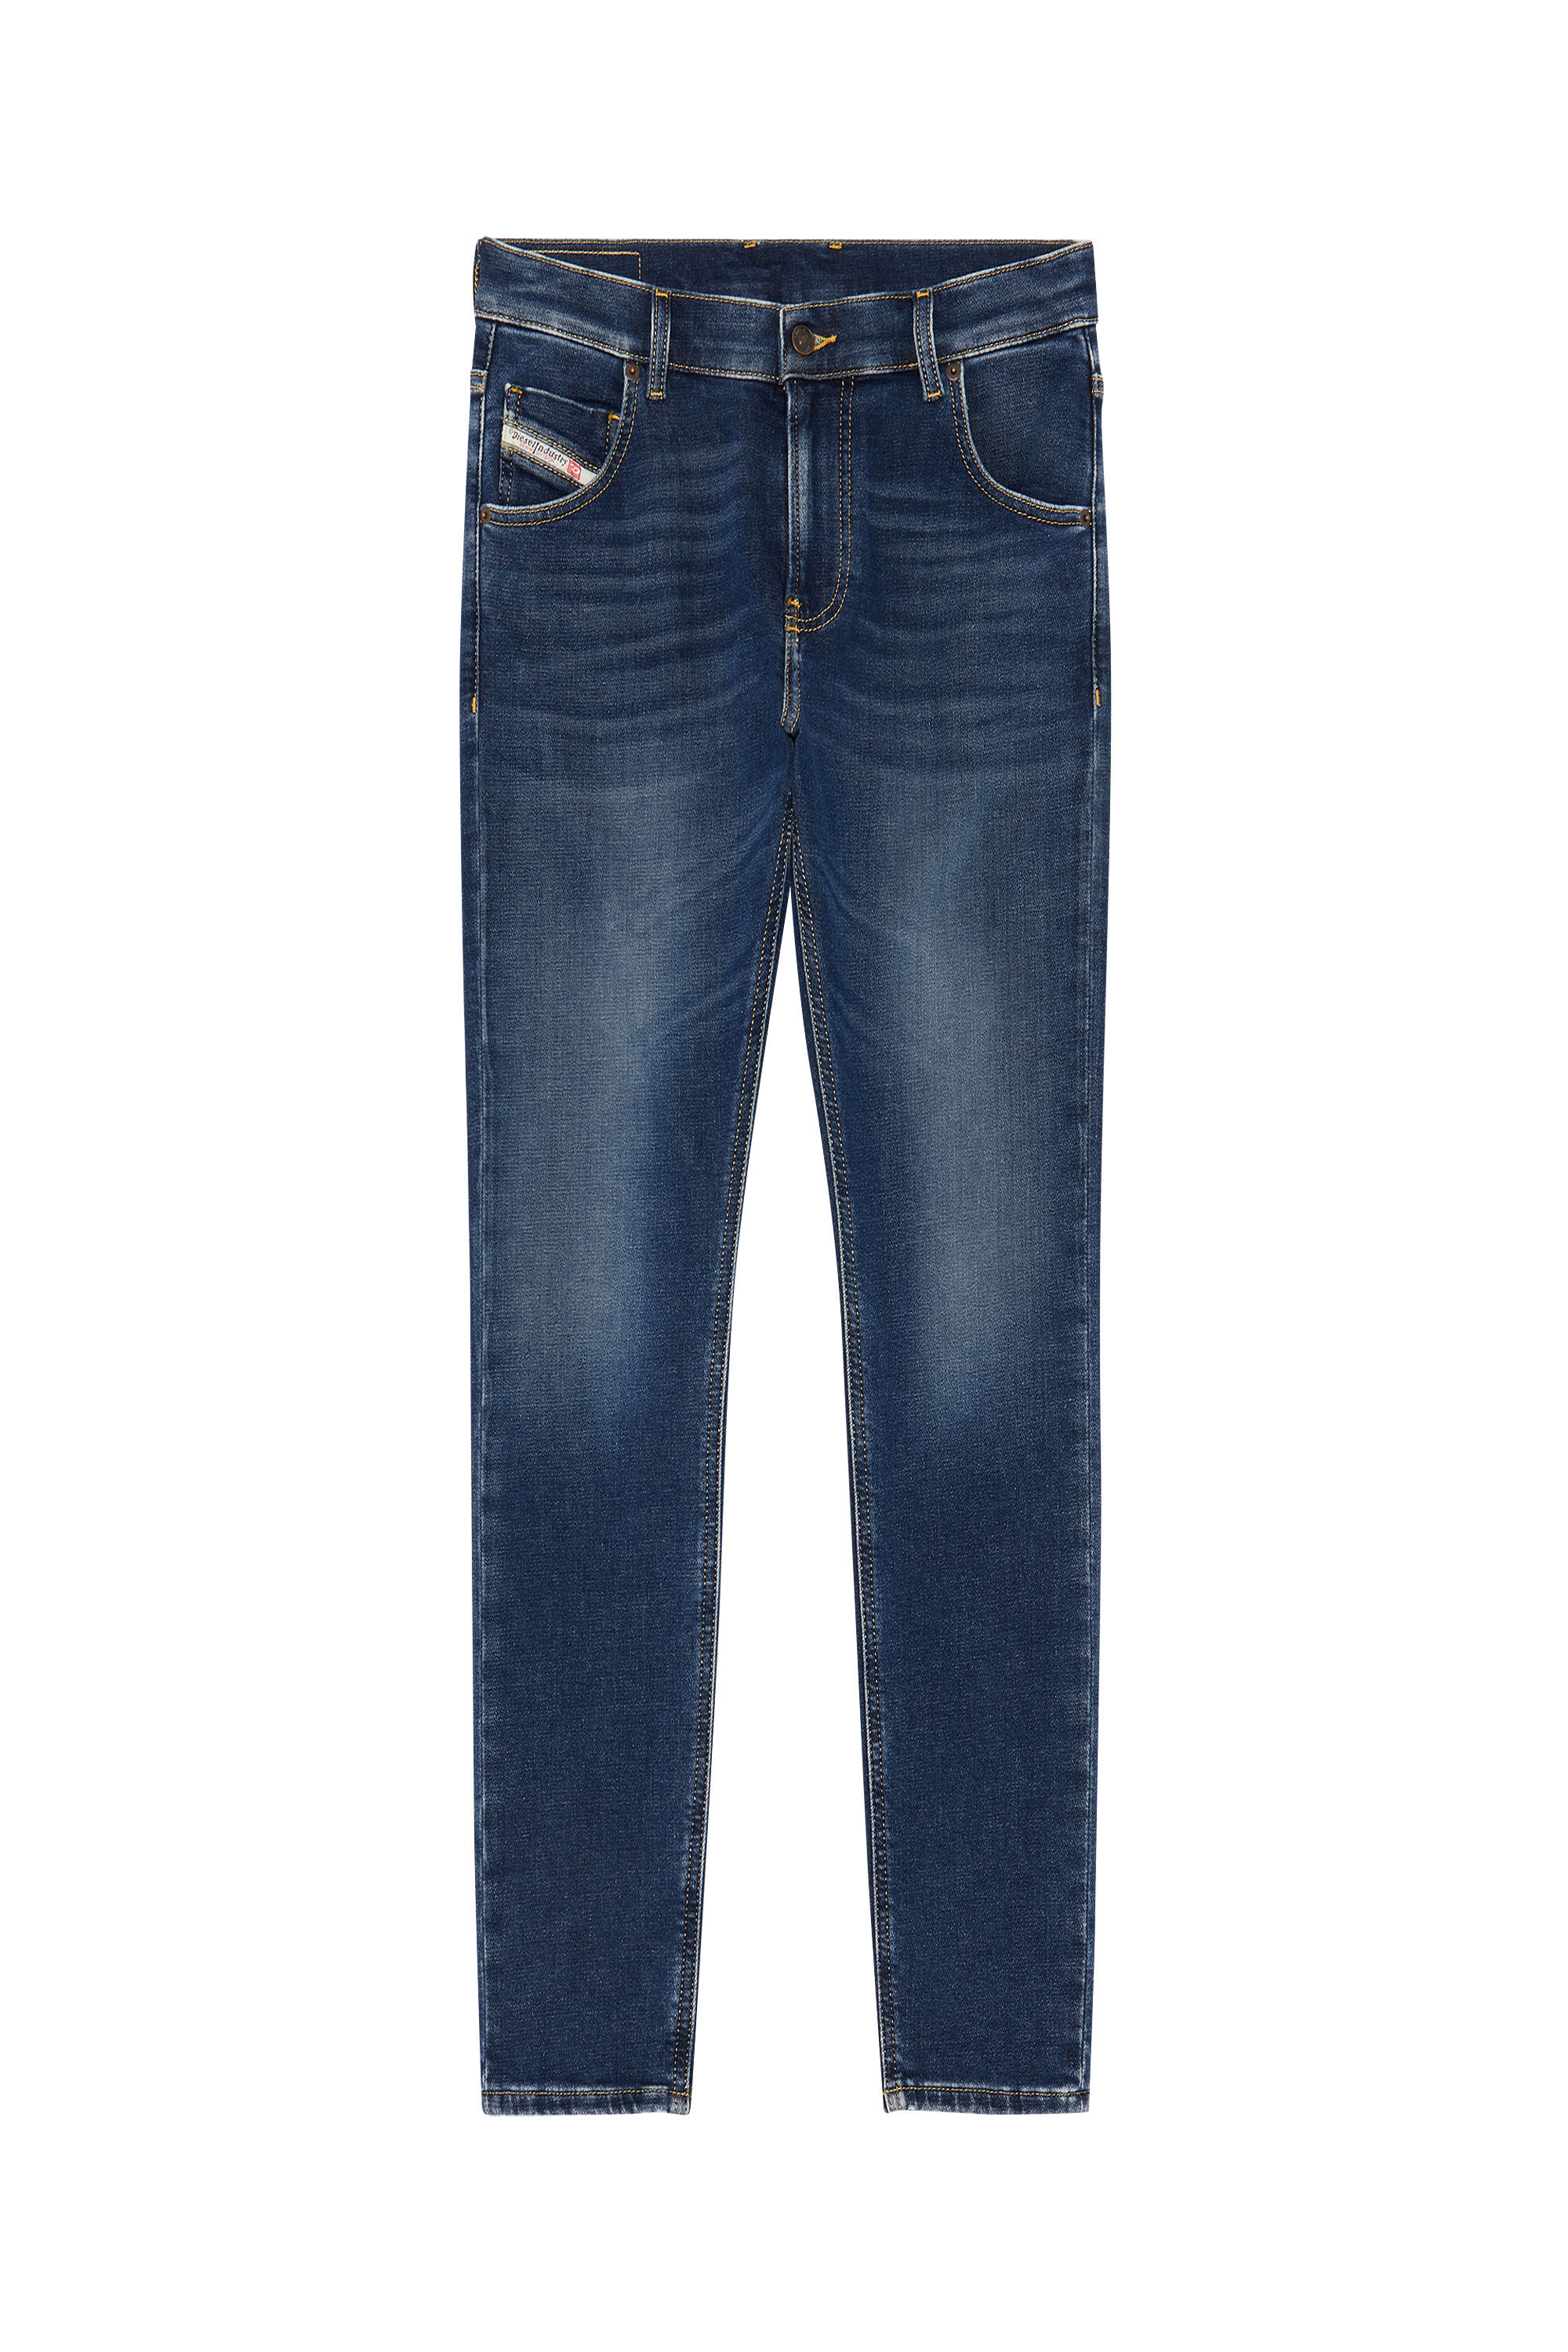 16163円 お求めやすく価格改定 Adriano Goldschmied ファッション ジーンズ Womens Blue Denim Whisker Wash Skinny Jeans 25